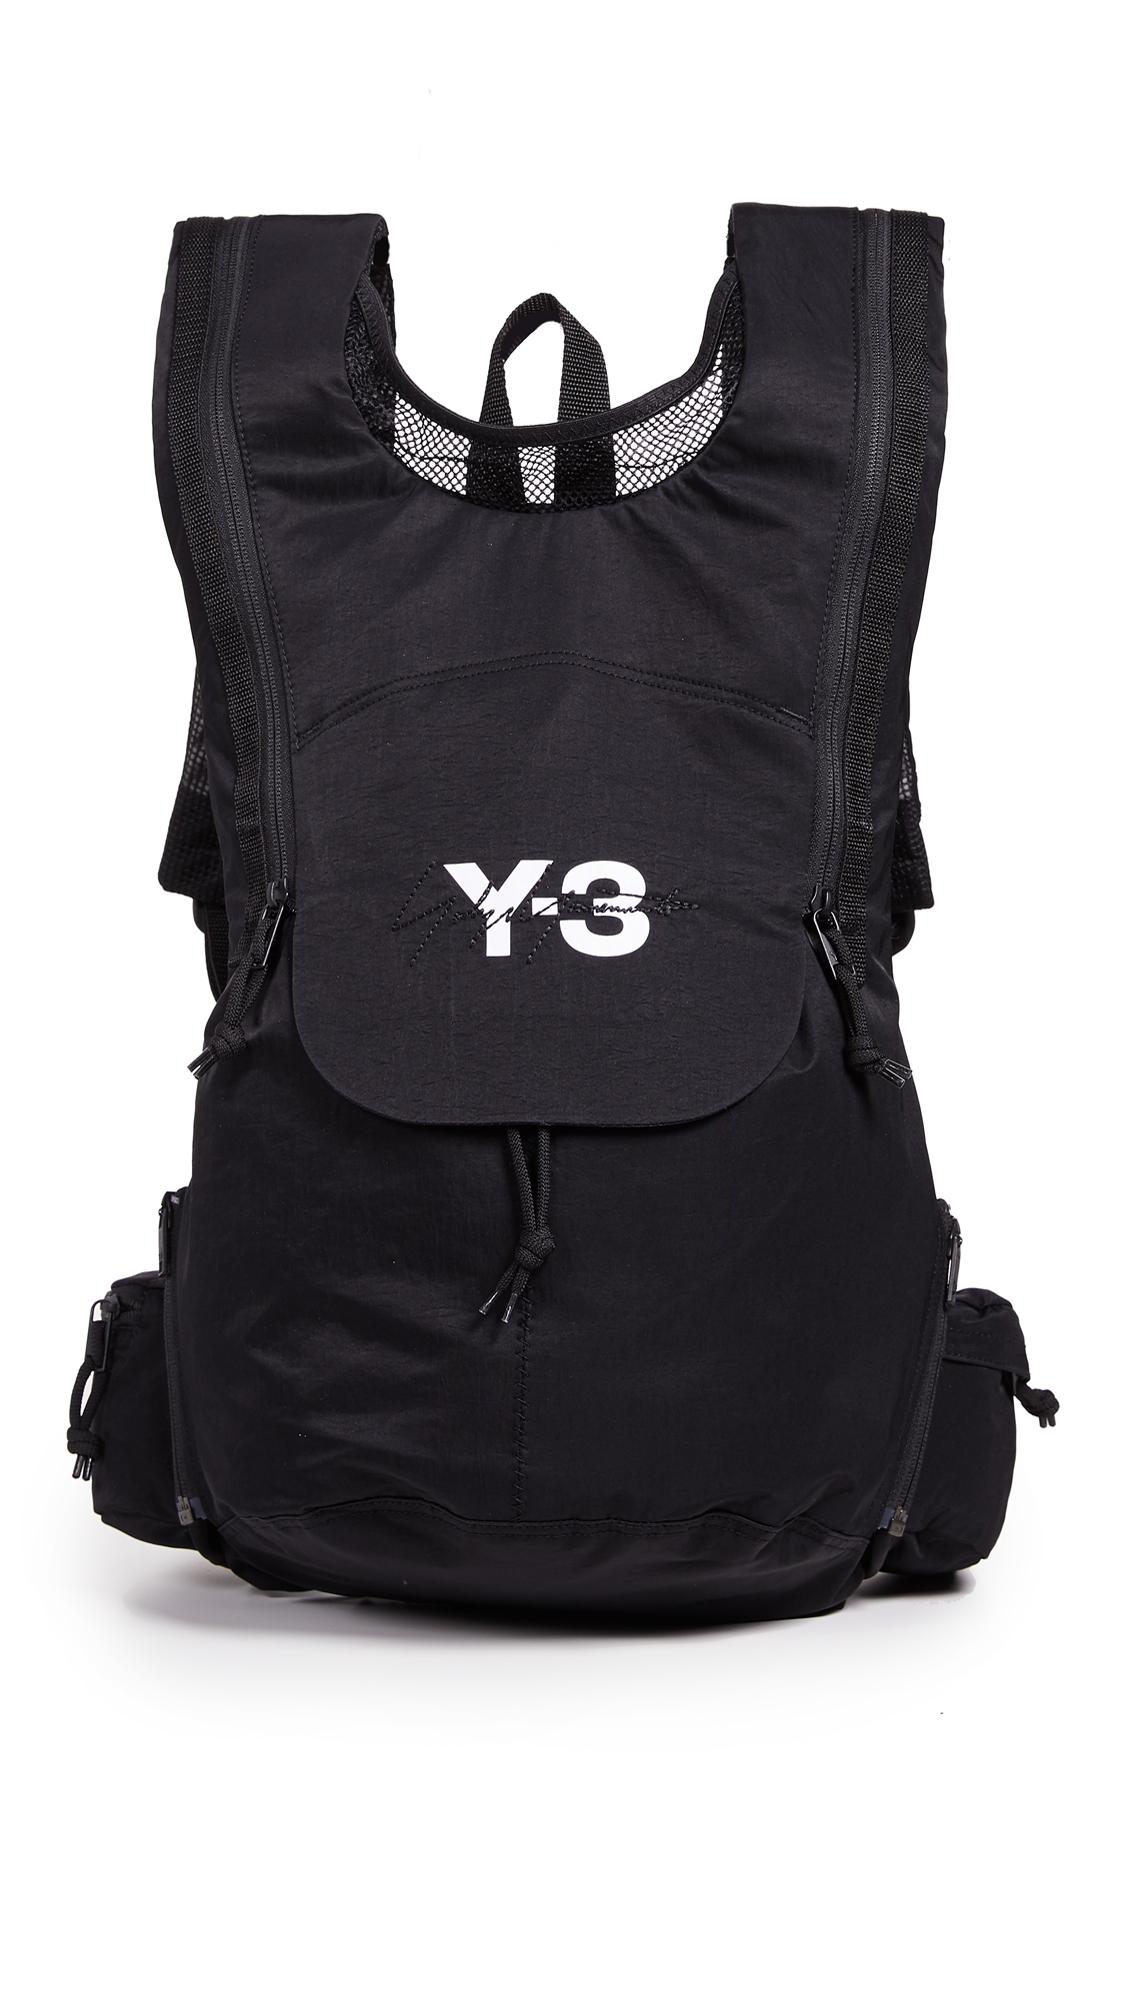 y3 running backpack